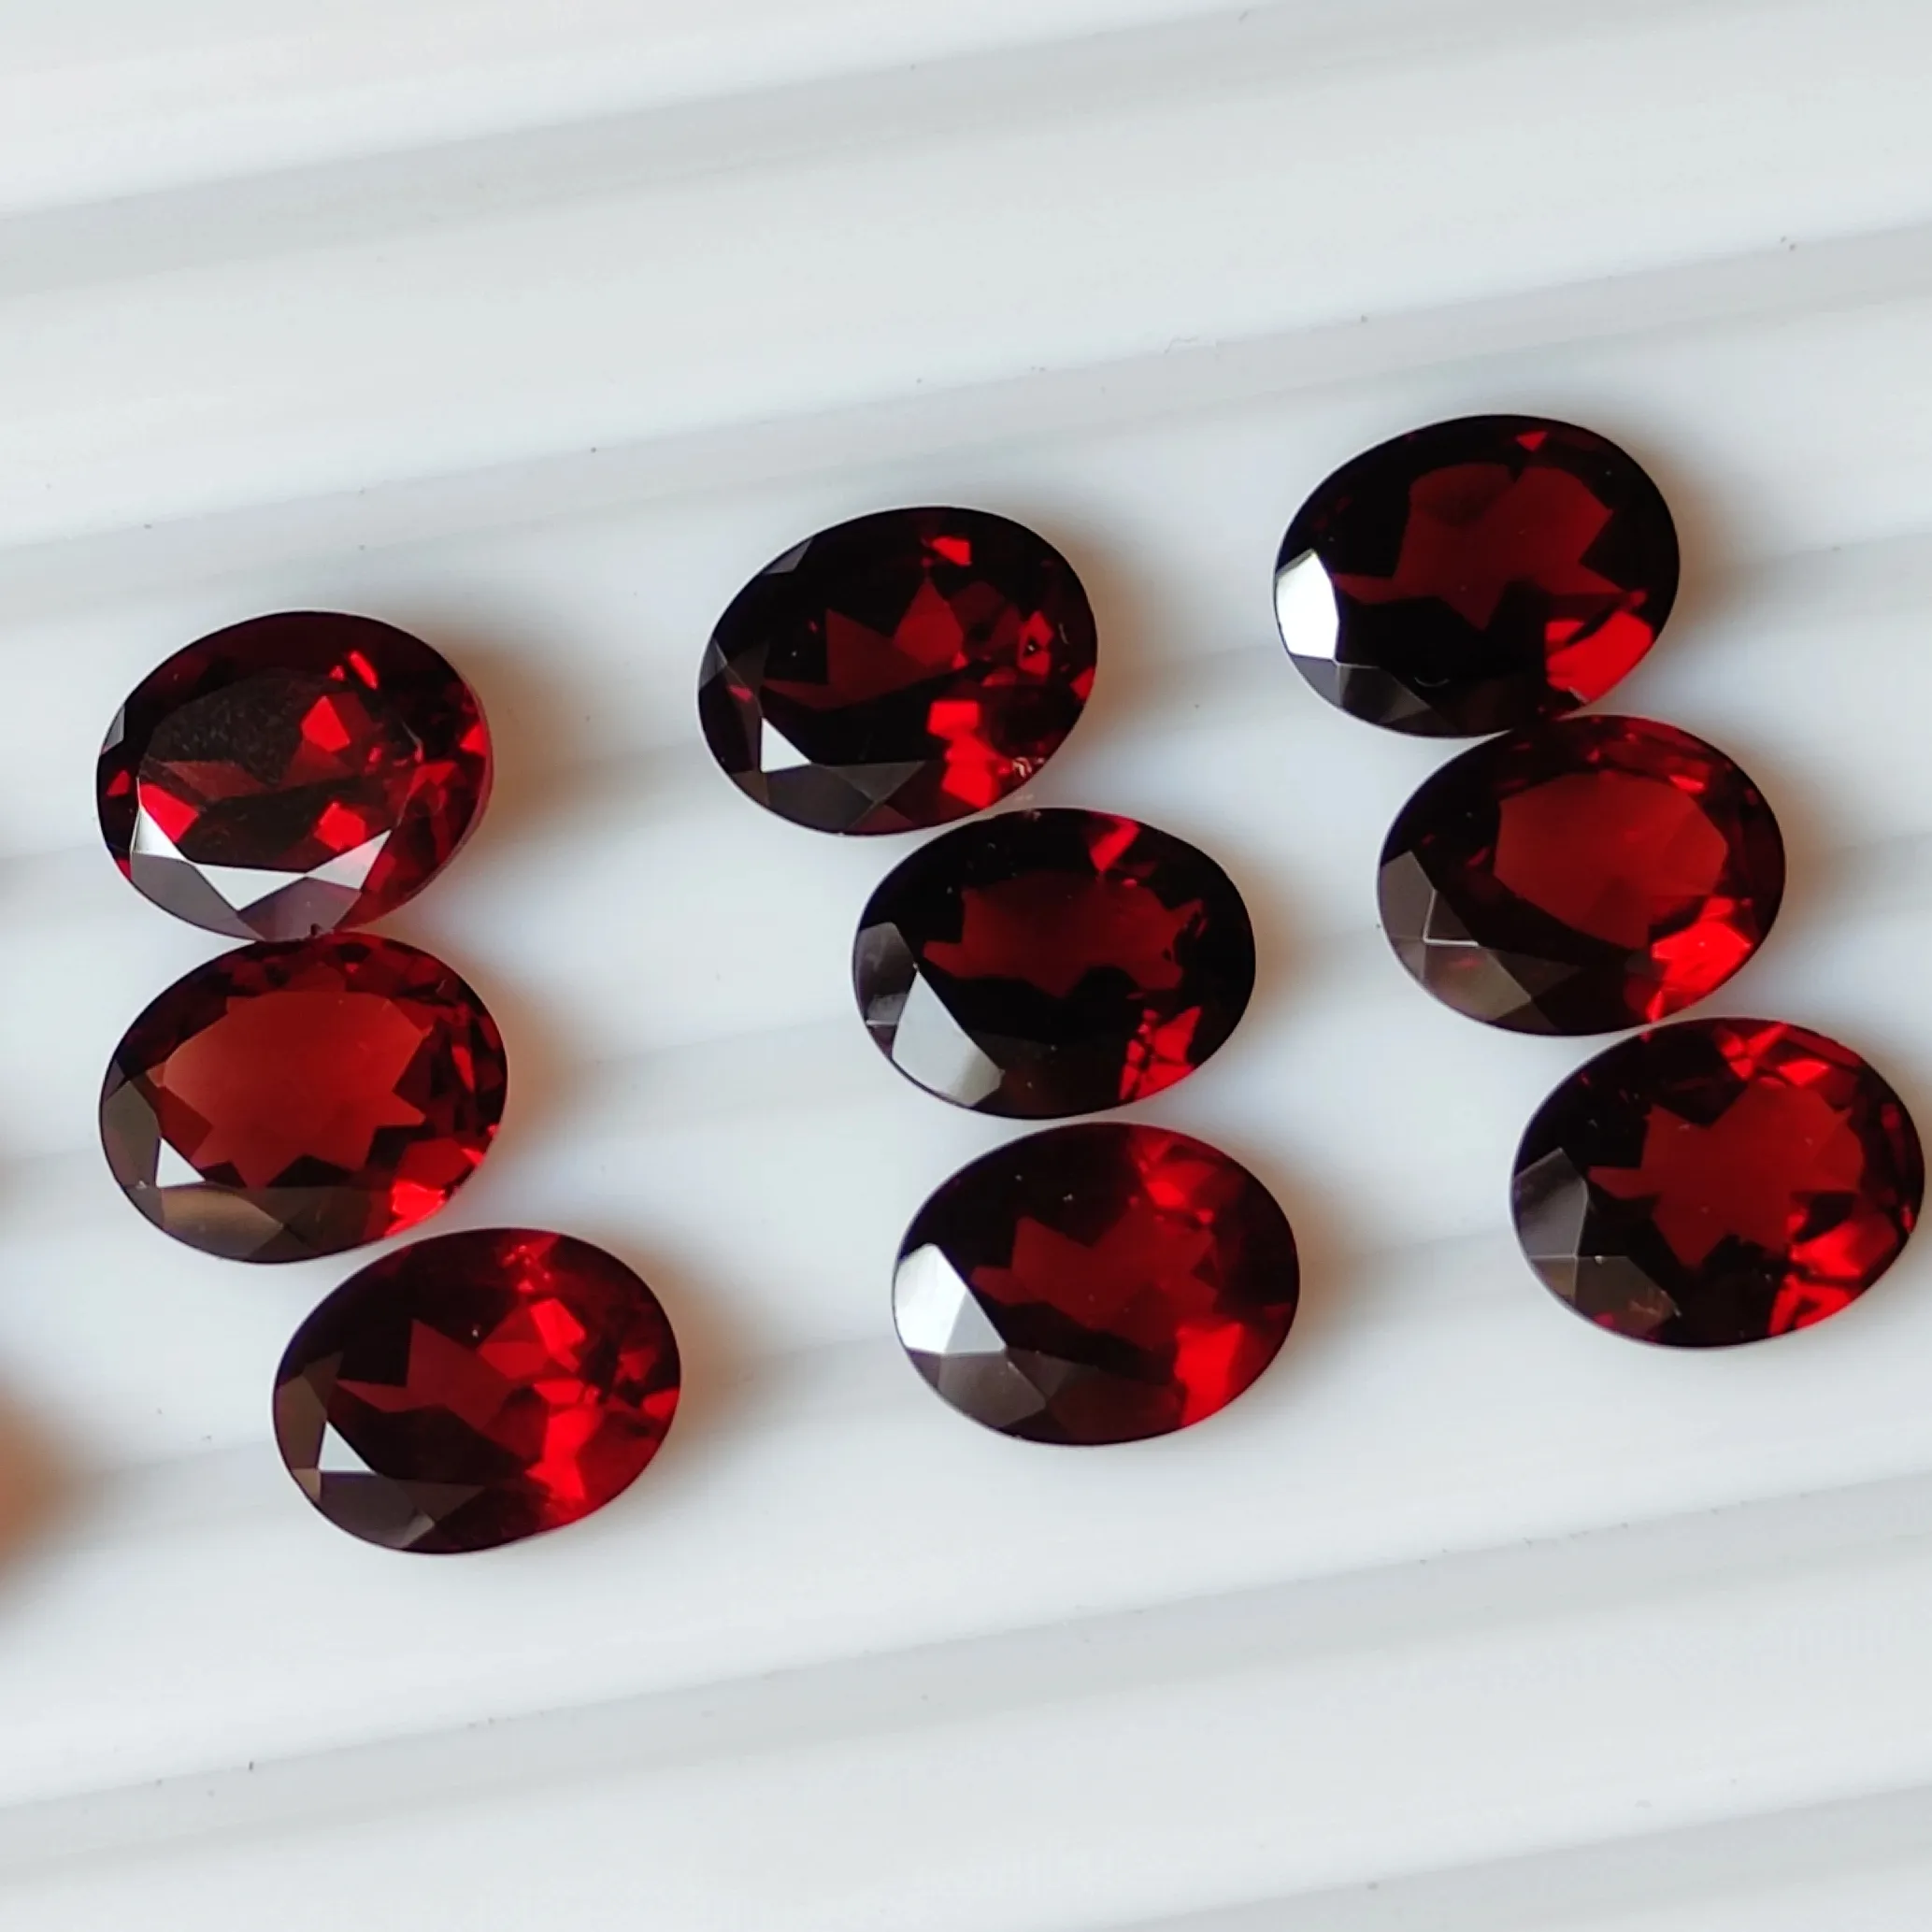 Pedras de corte de granada vermelha de Moçambique de alta qualidade de 2 mm a 12 mm em todos os formatos e tamanhos, pedras oval redondas de pêra facetada granada